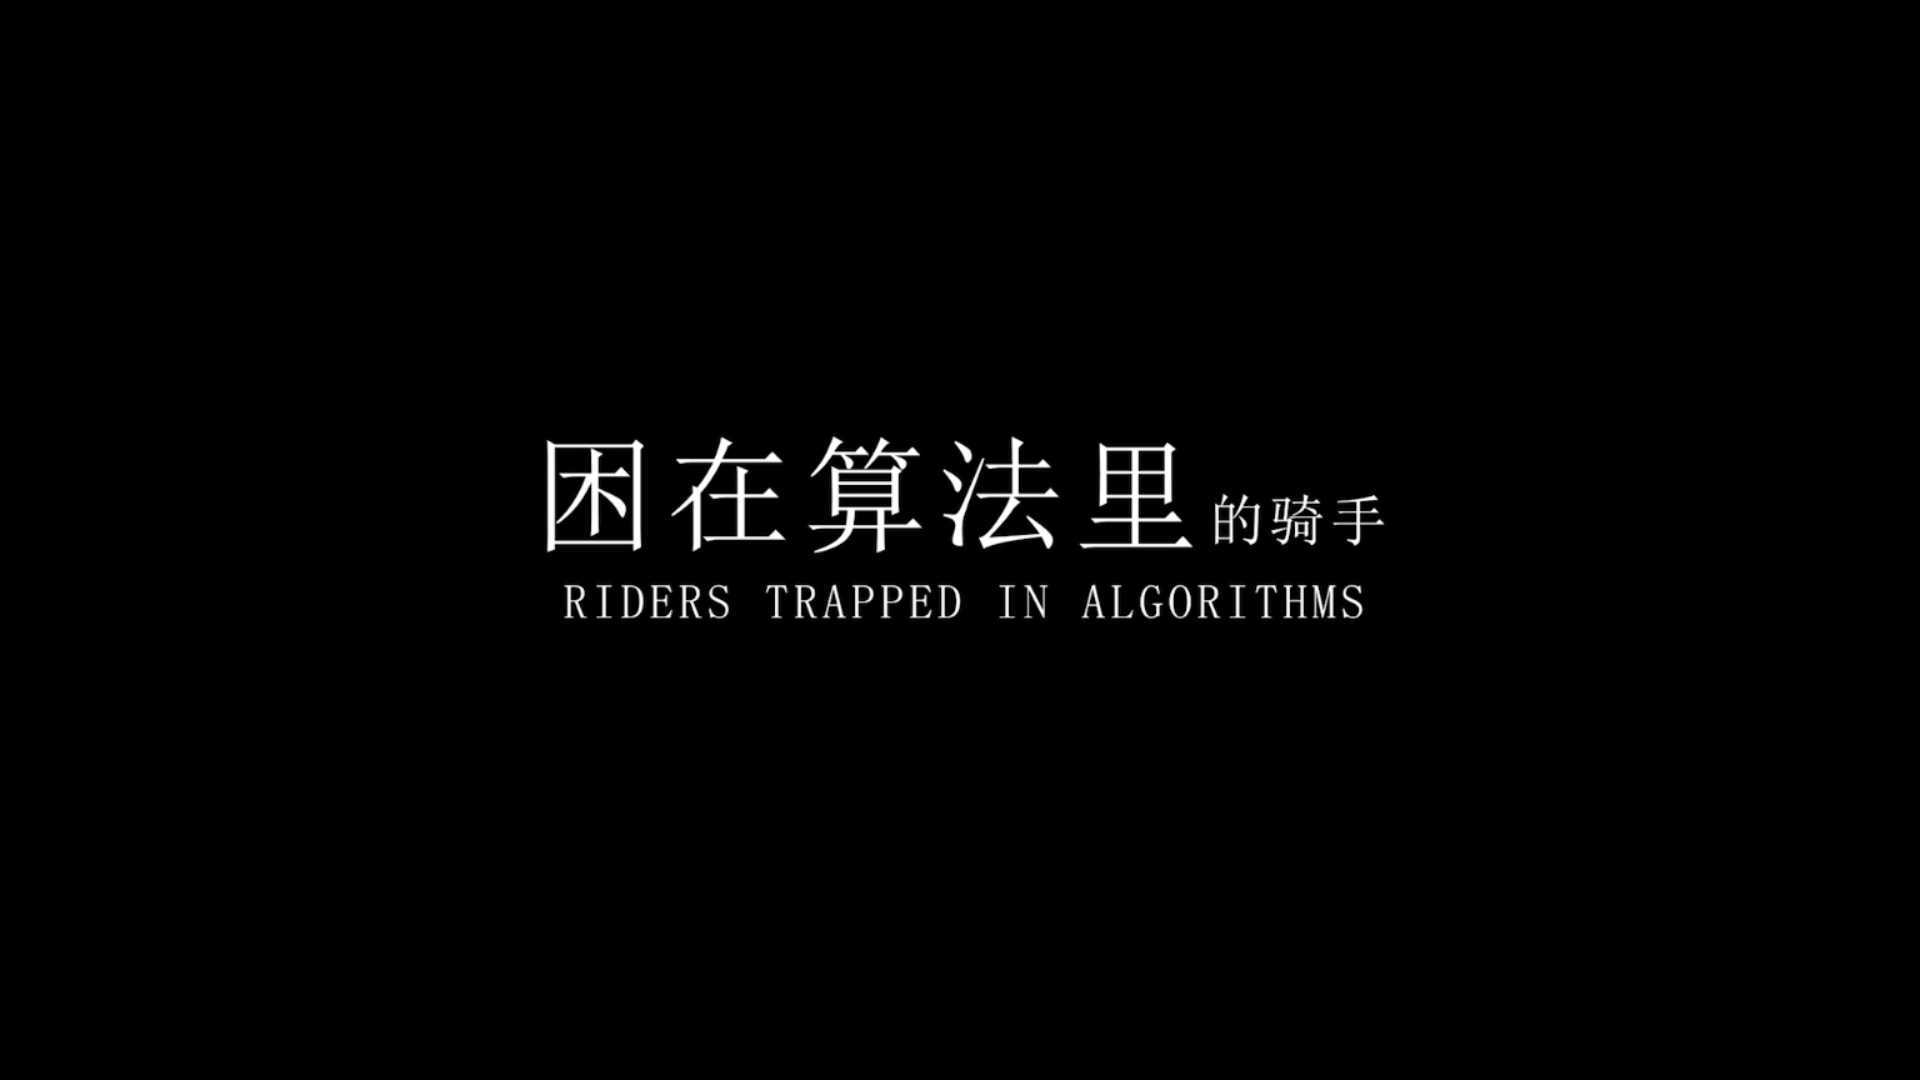 东莞理工学院传媒系2021毕业作品 纪录片 困在算法里的骑手